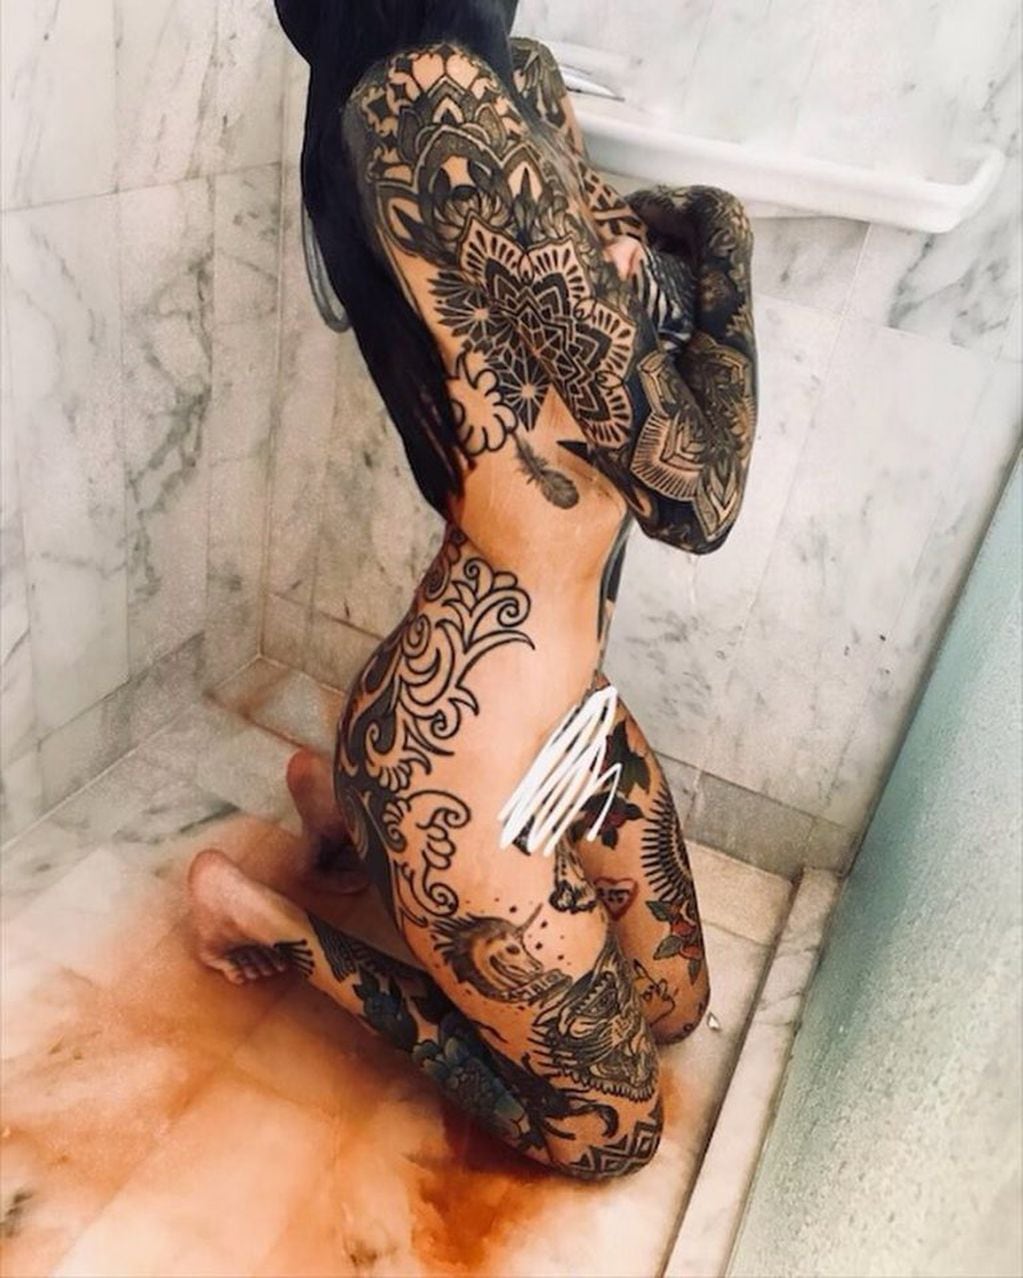 Candelaria Tinelli publicó dos extrañas fotos desde la ducha (Instagram/ candelariatinelli)